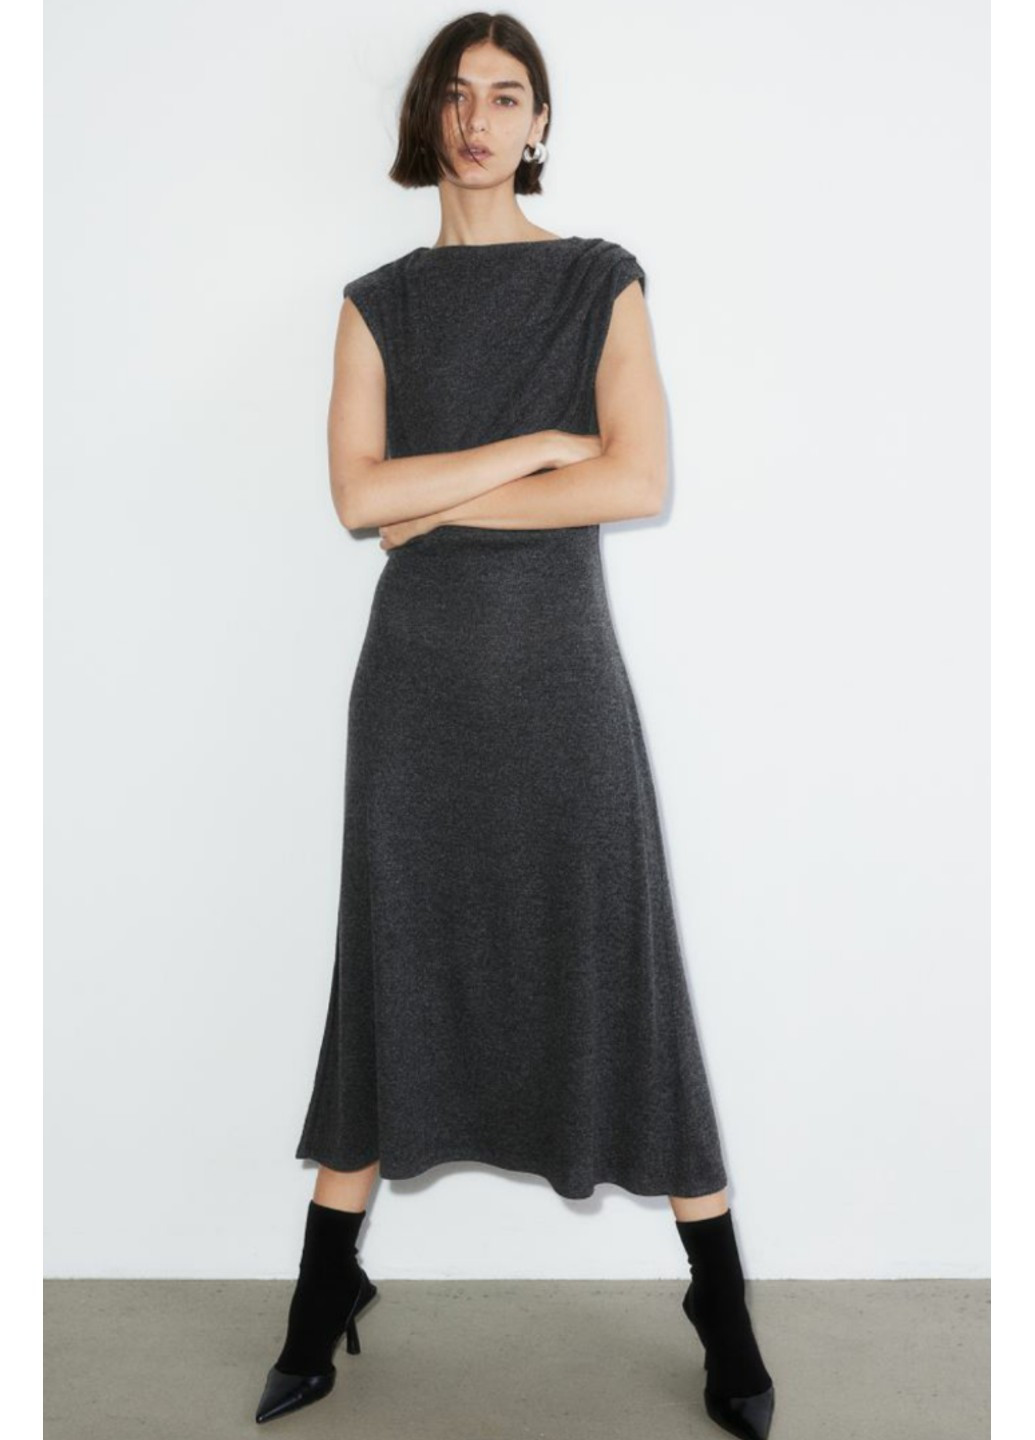 Серое деловое женское платье из трикотажа плиссе н&м (56557) s серое H&M